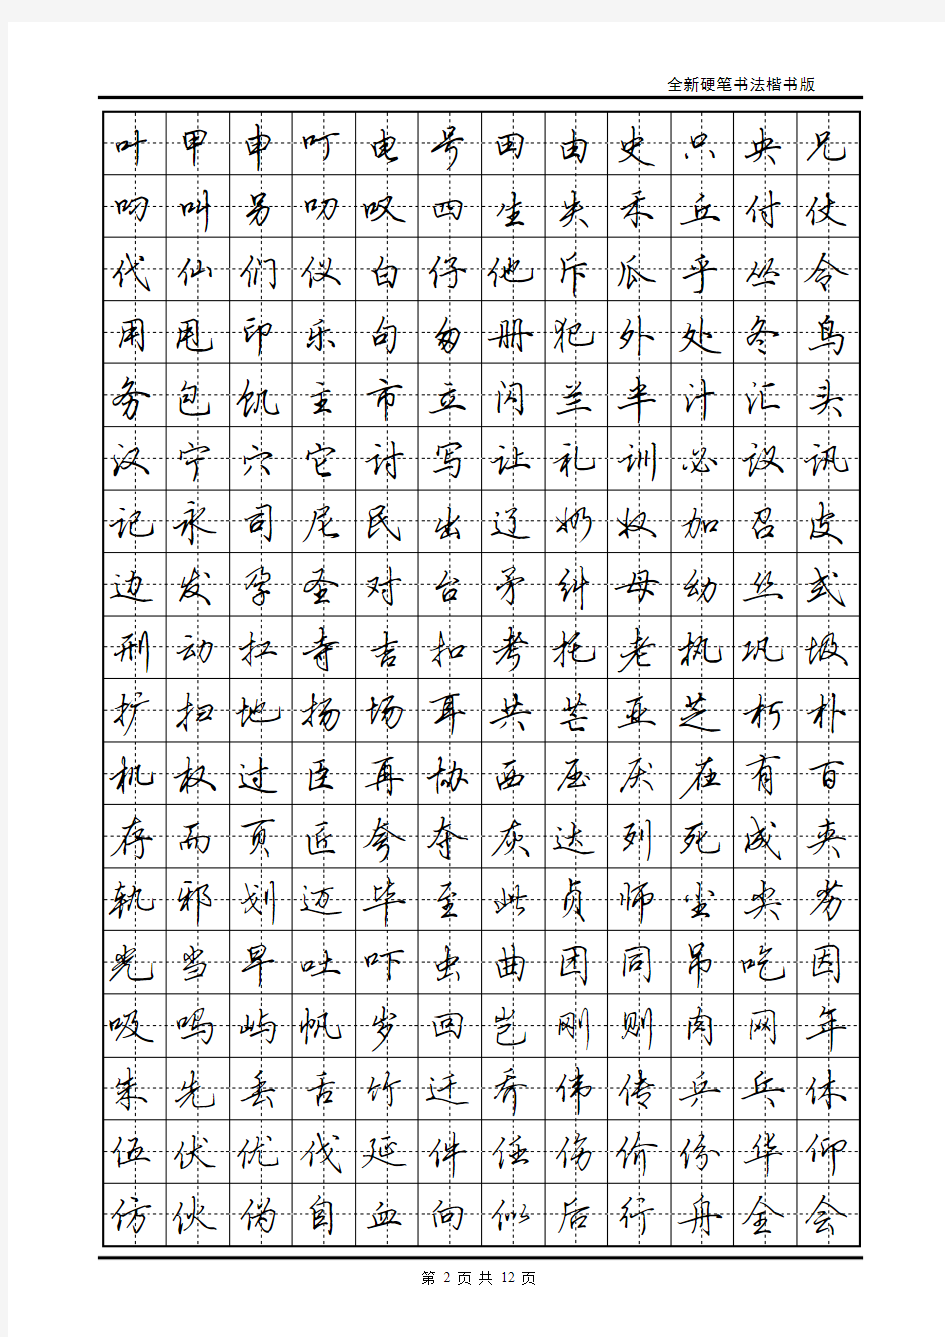 现代汉语常用字3500字帖(田英章)